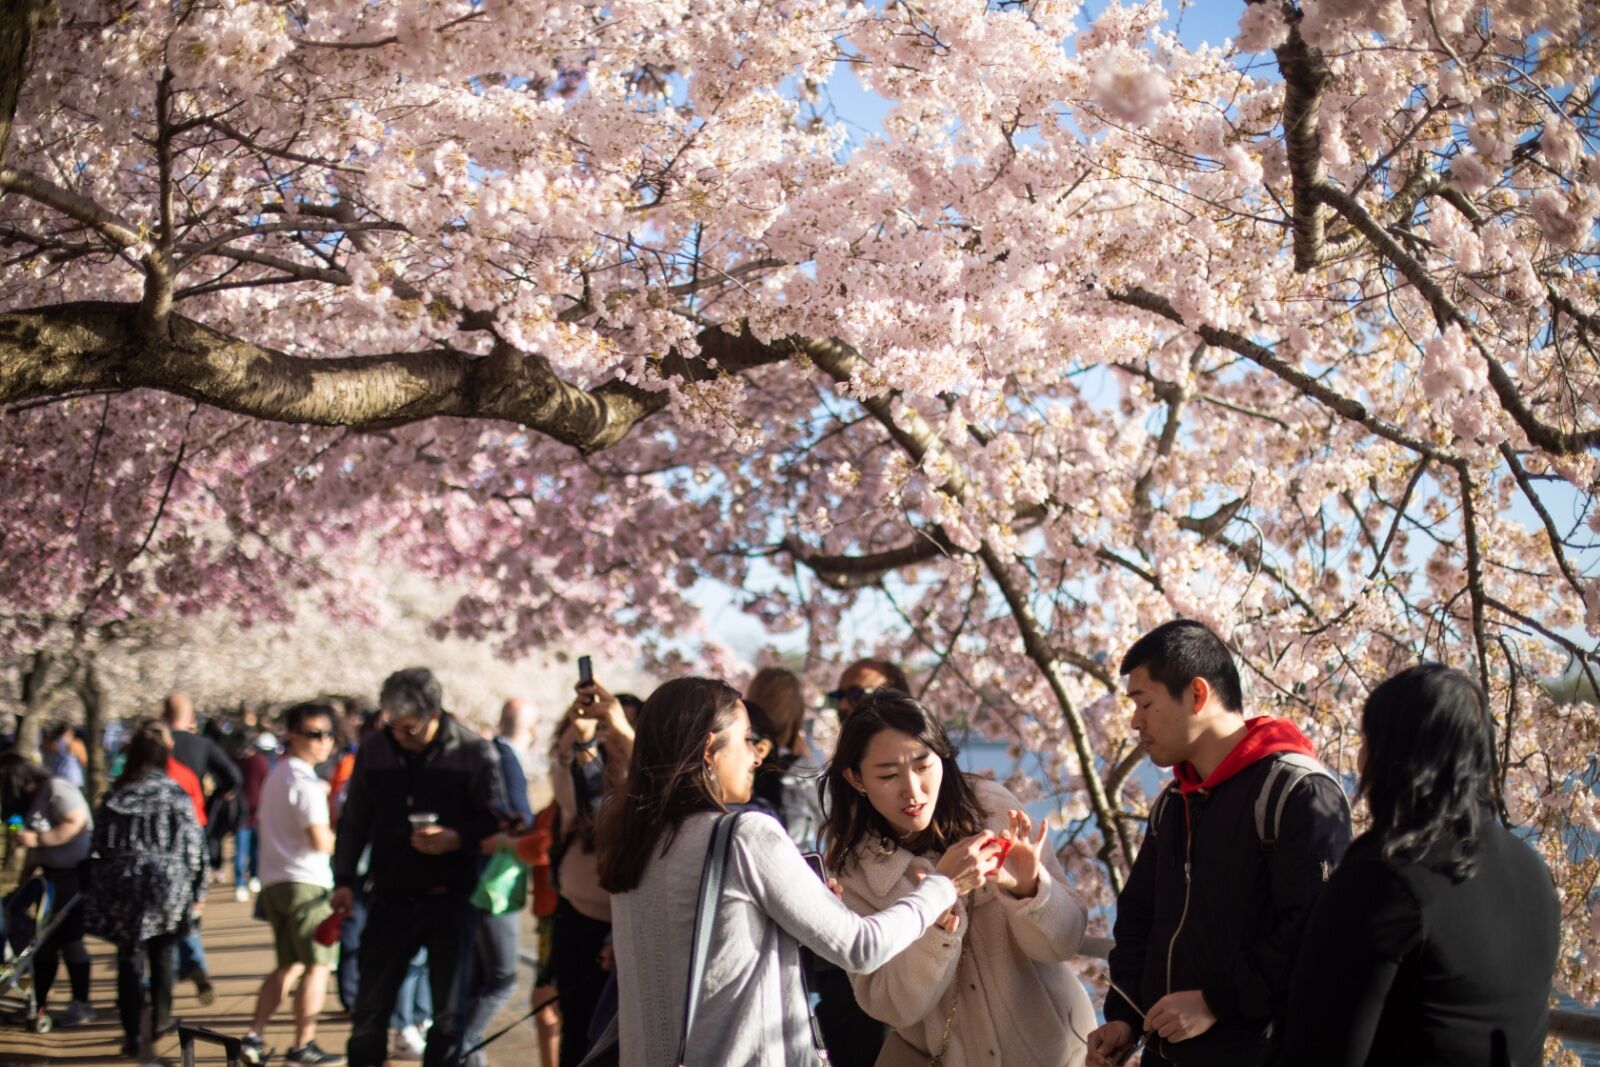 dc cherry blossom festival crowds